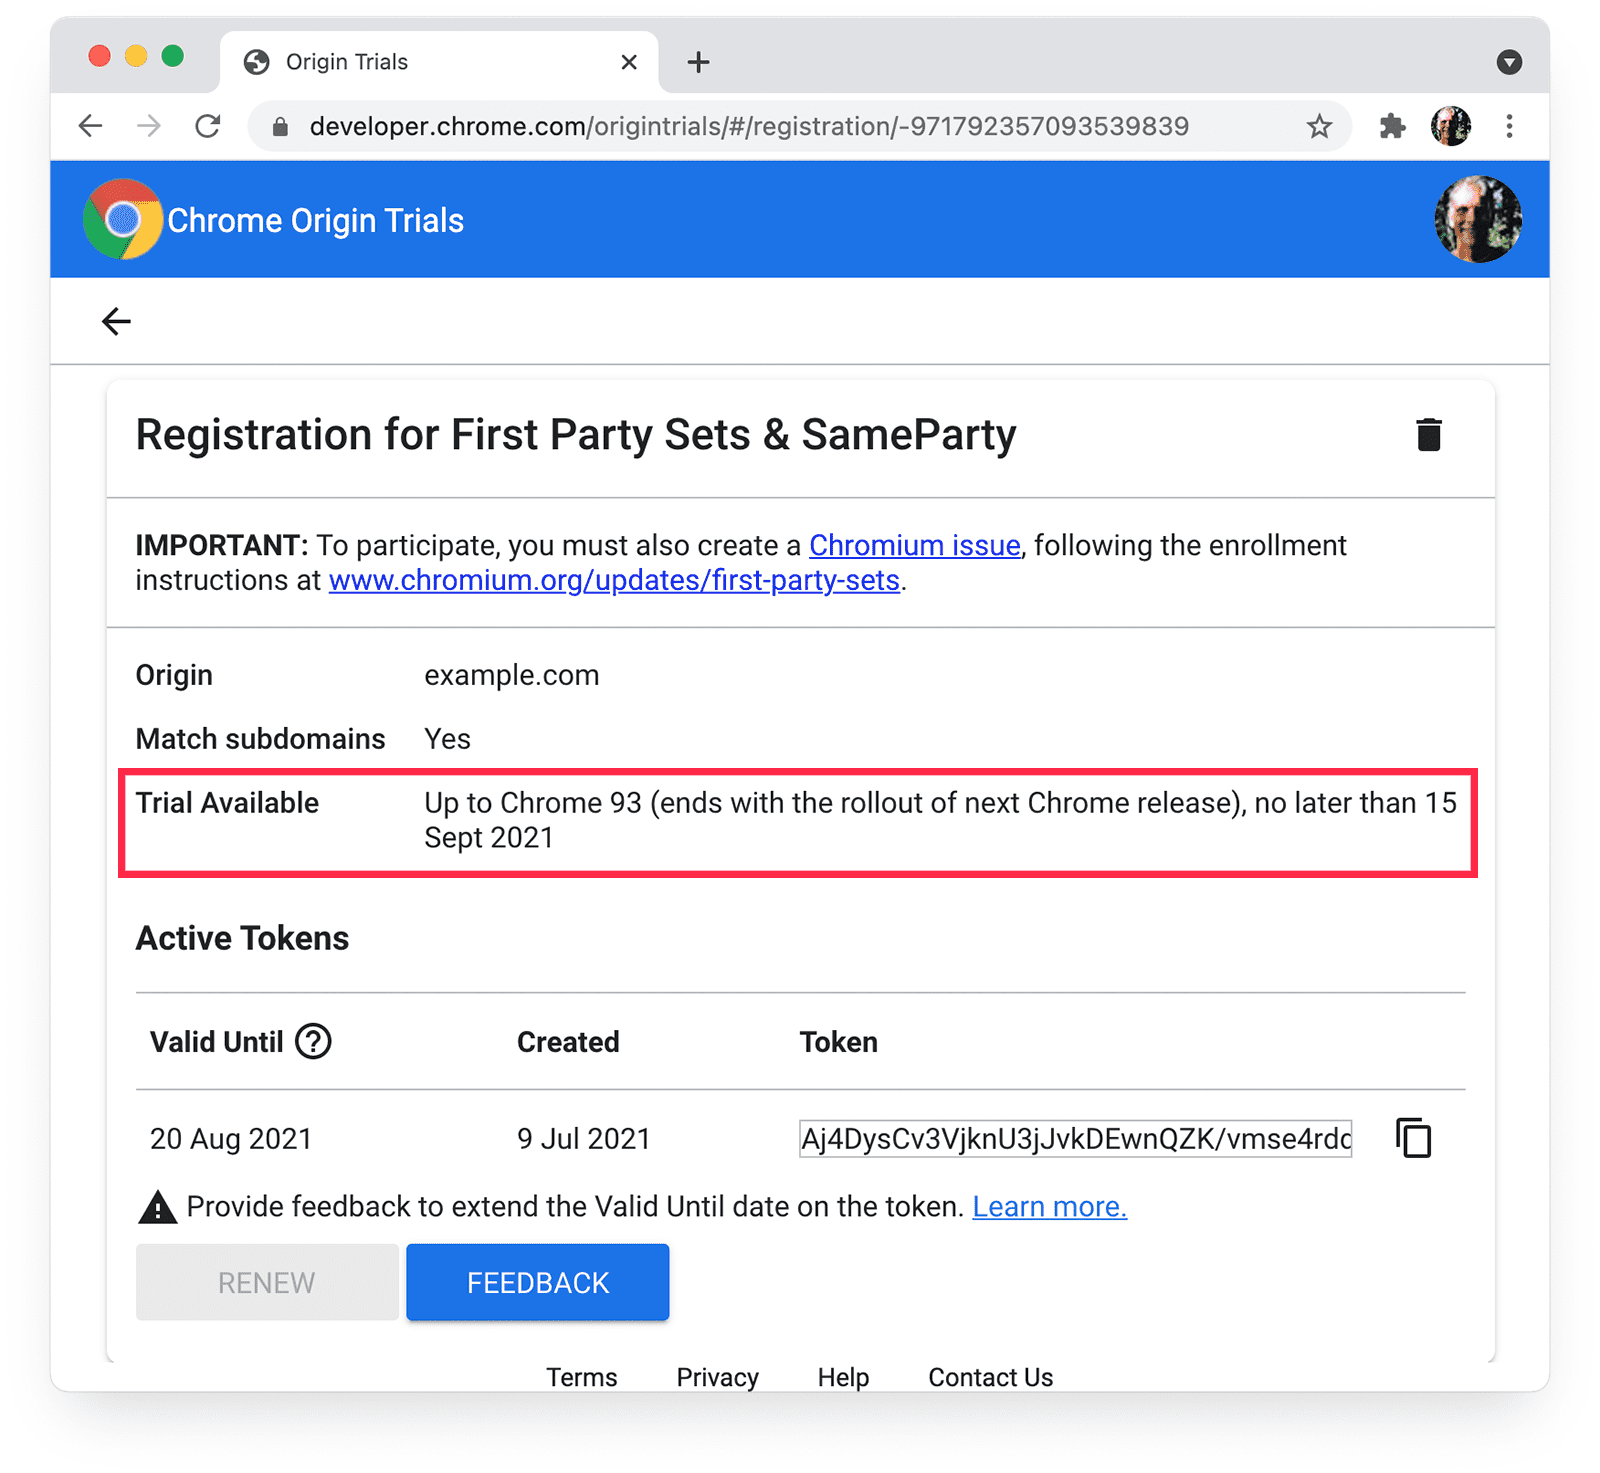 Pruebas de origen de Chrome
de Conjuntos propios y Se destacan los detalles de SameParty con versión de prueba disponible.